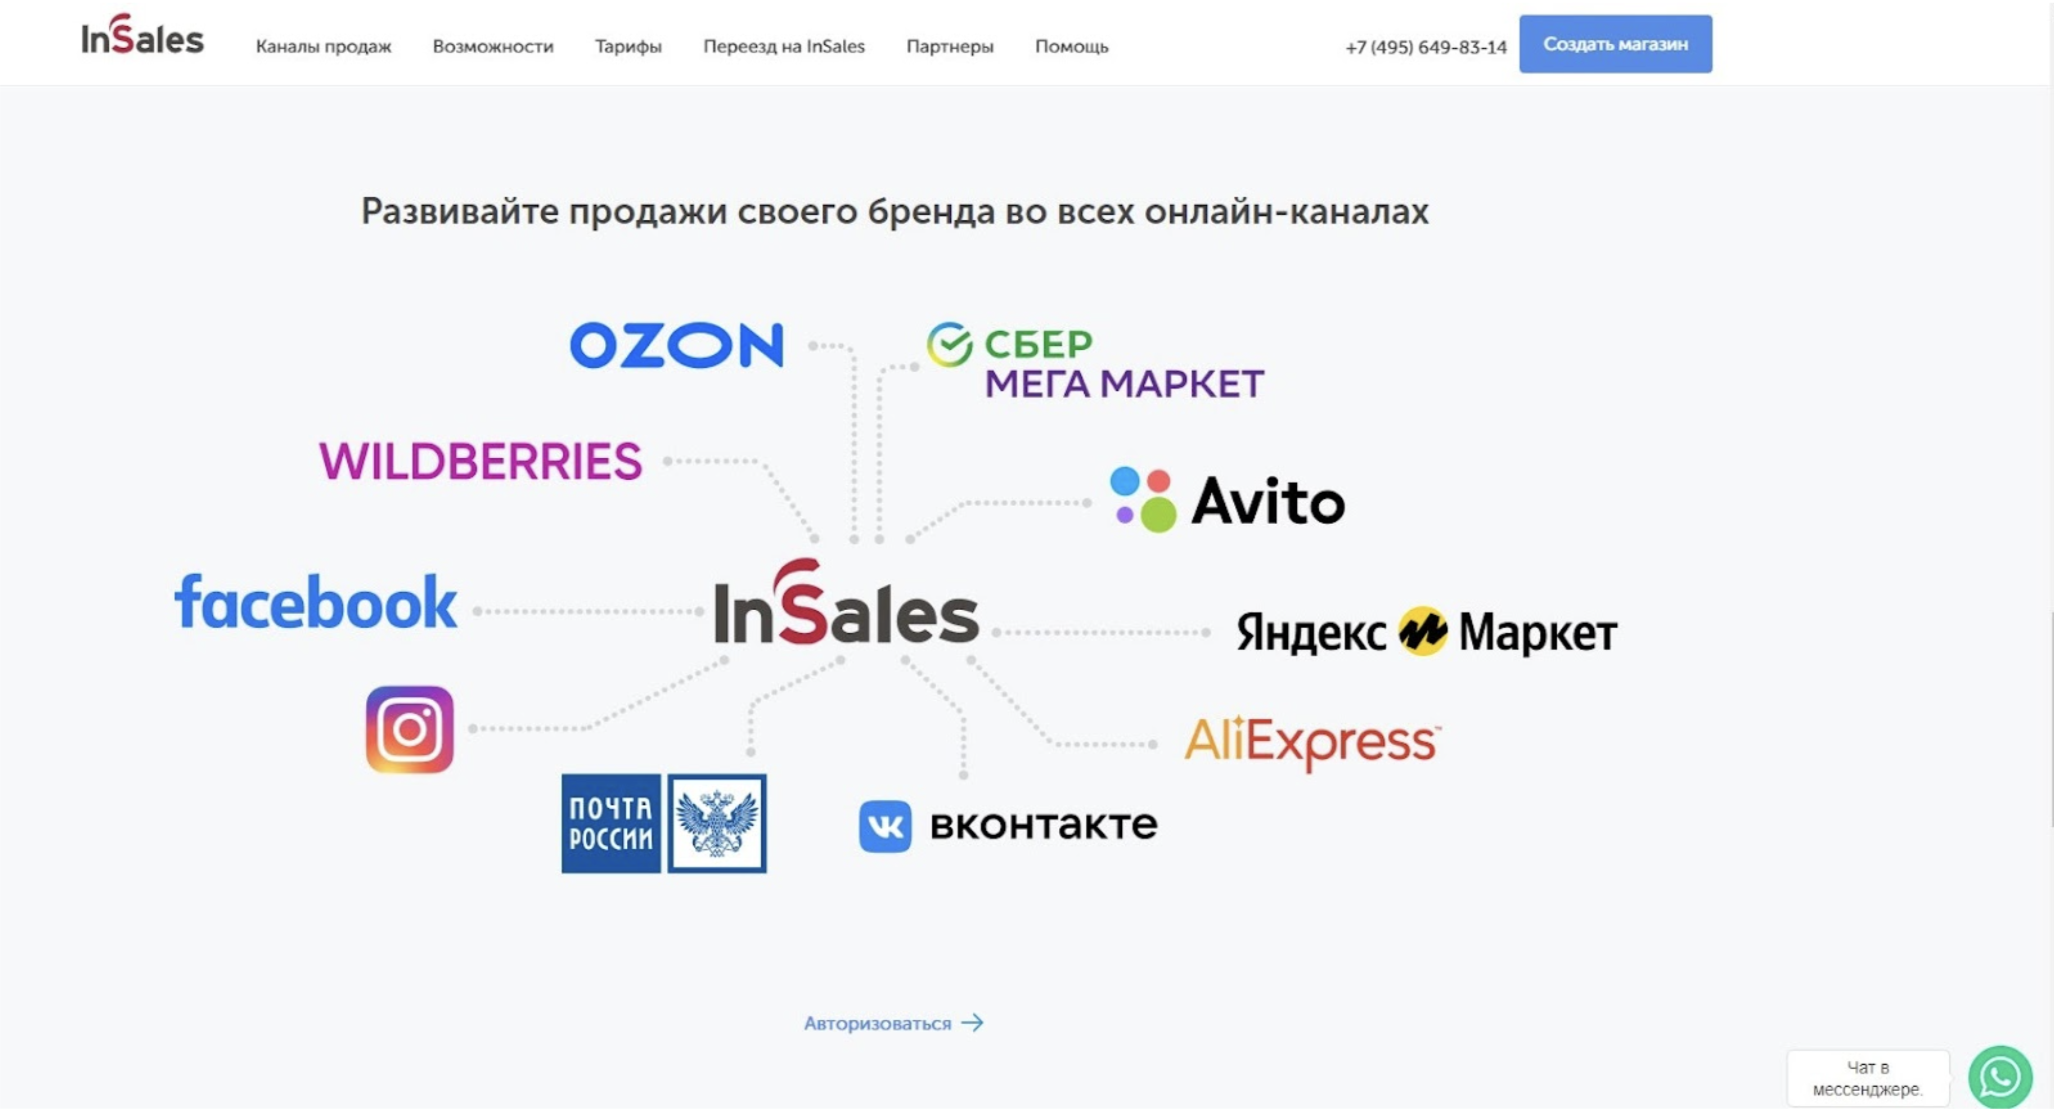 Основные партнеры и интеграции e-commerсe платформы Insales на российском рынке